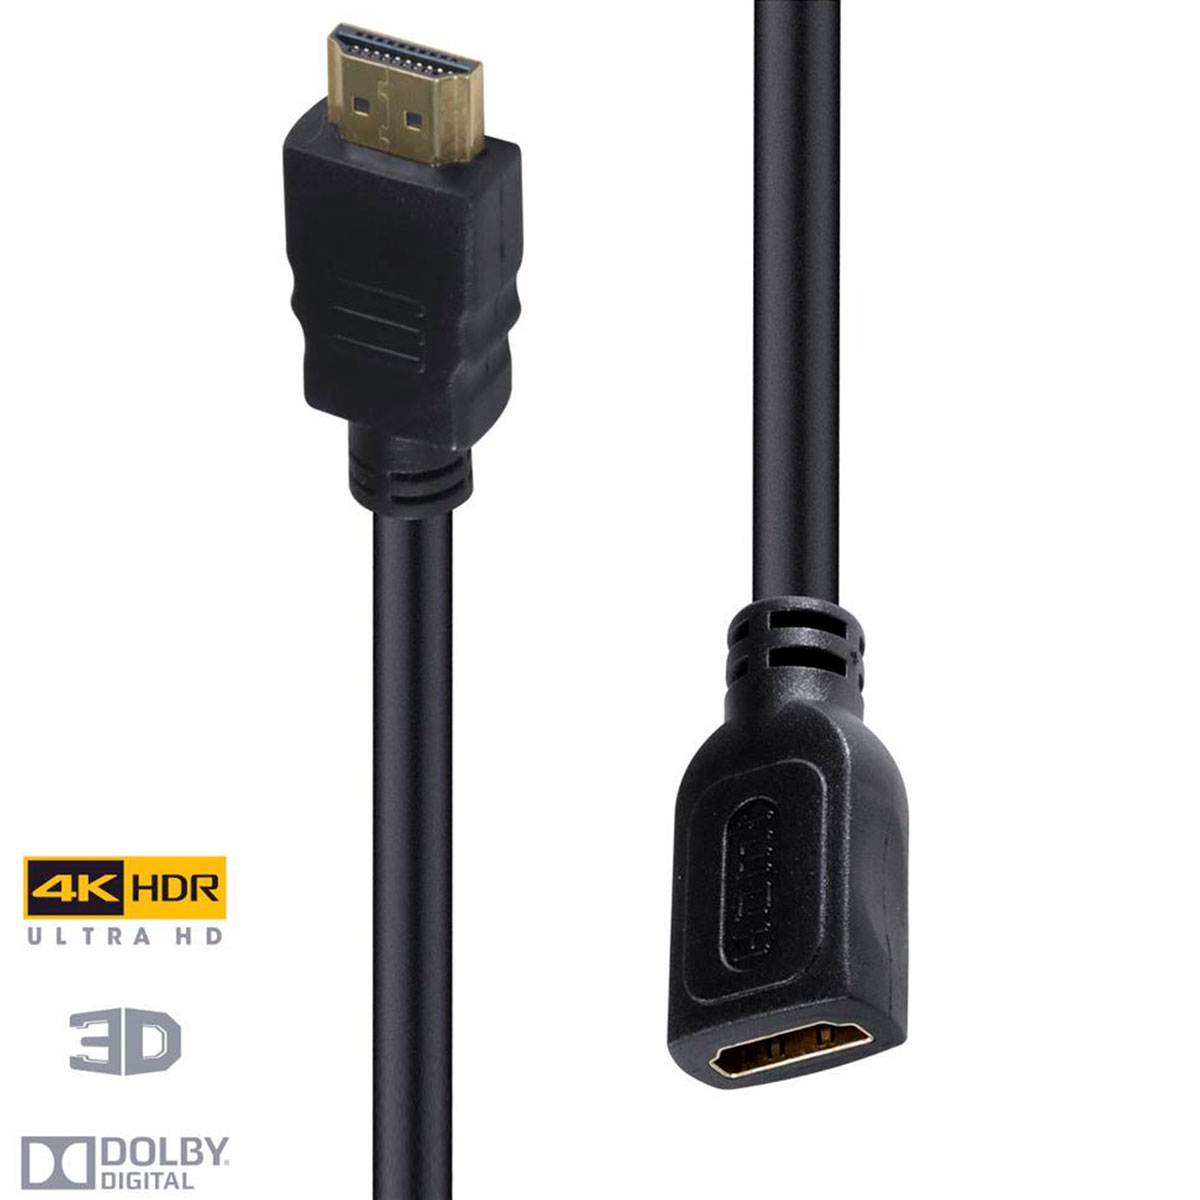 Cabo Extensor HDMI 2.0 - 2 metros - 4K UltraHD - com Filtro